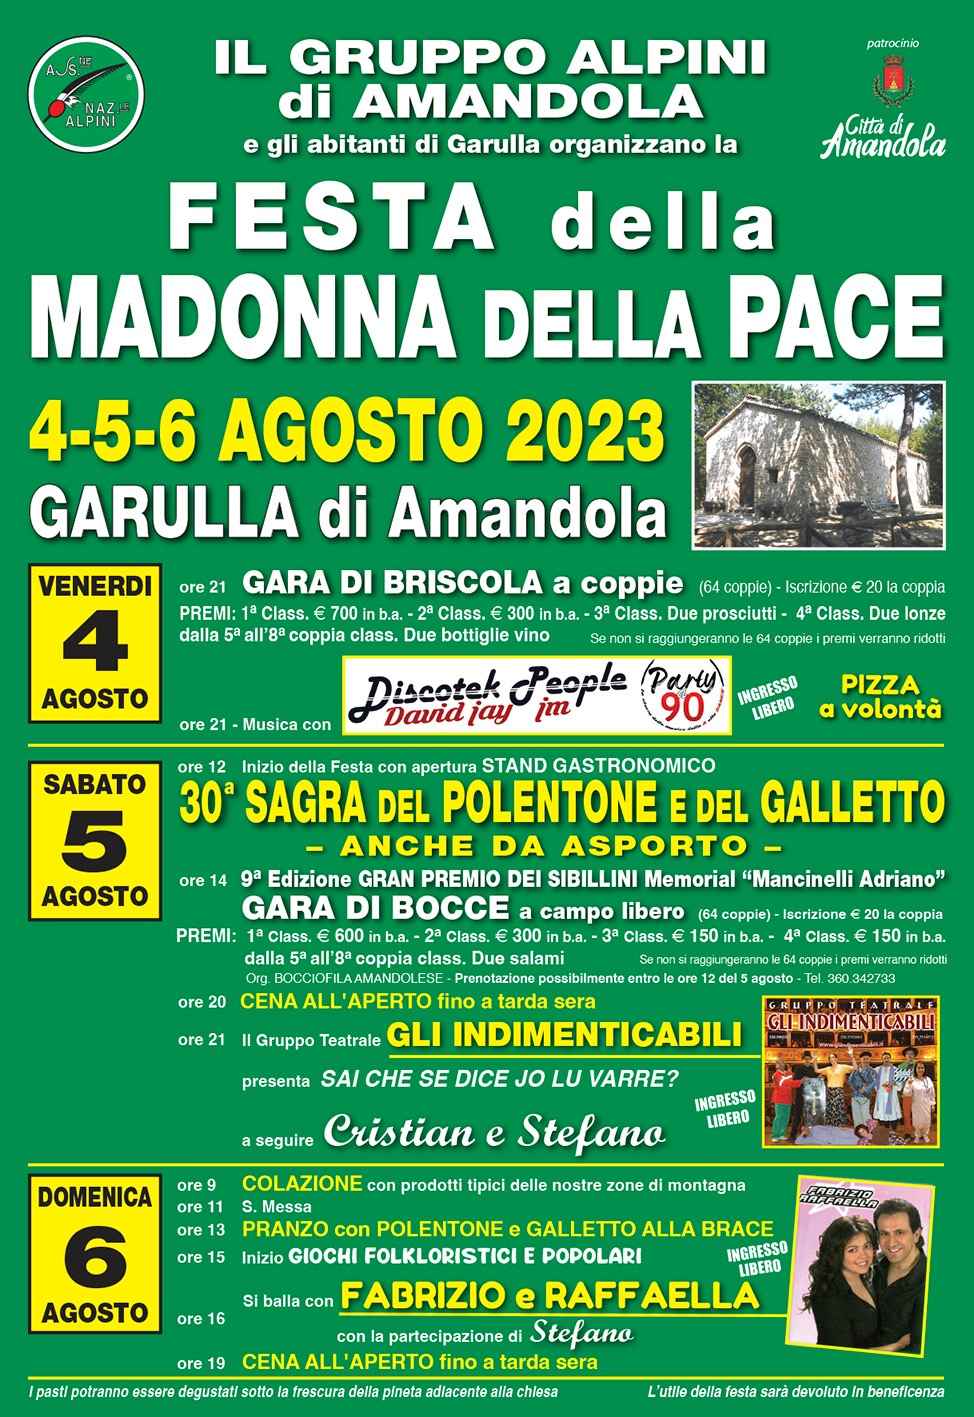 Amandola (FM)
"Festa della Madonna della Pace" 
4-5-6 Agosto 2023